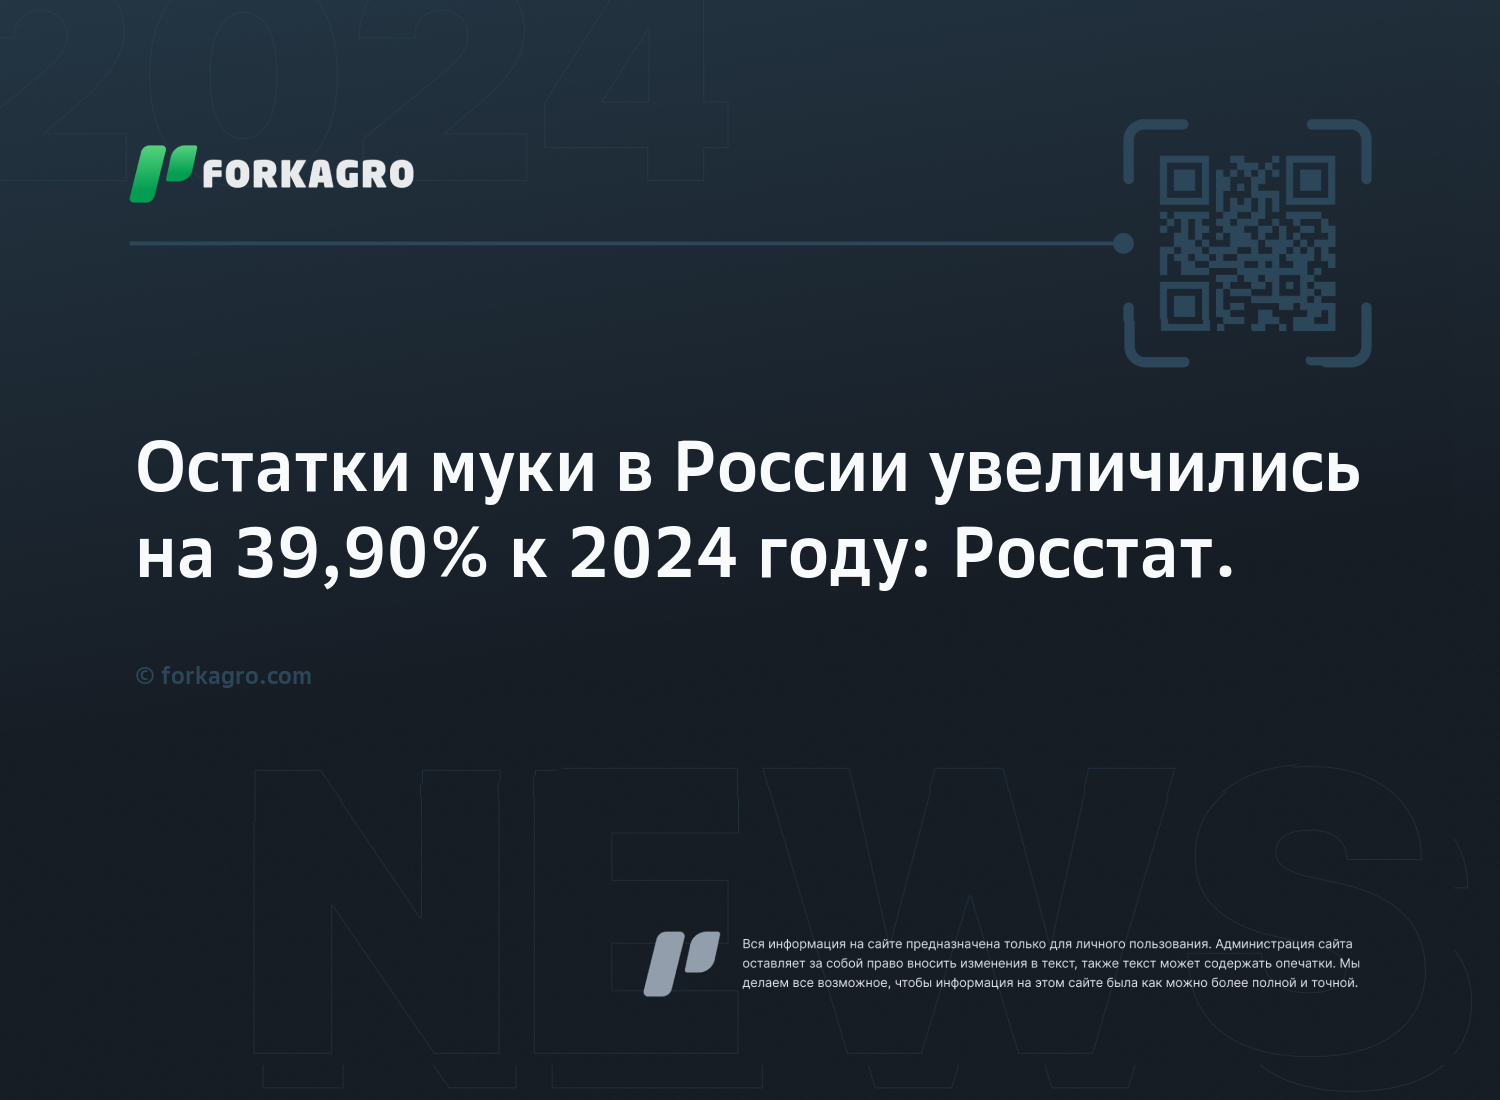 Остатки муки в России увеличились на 39,90% к 2024 году: Росстат.